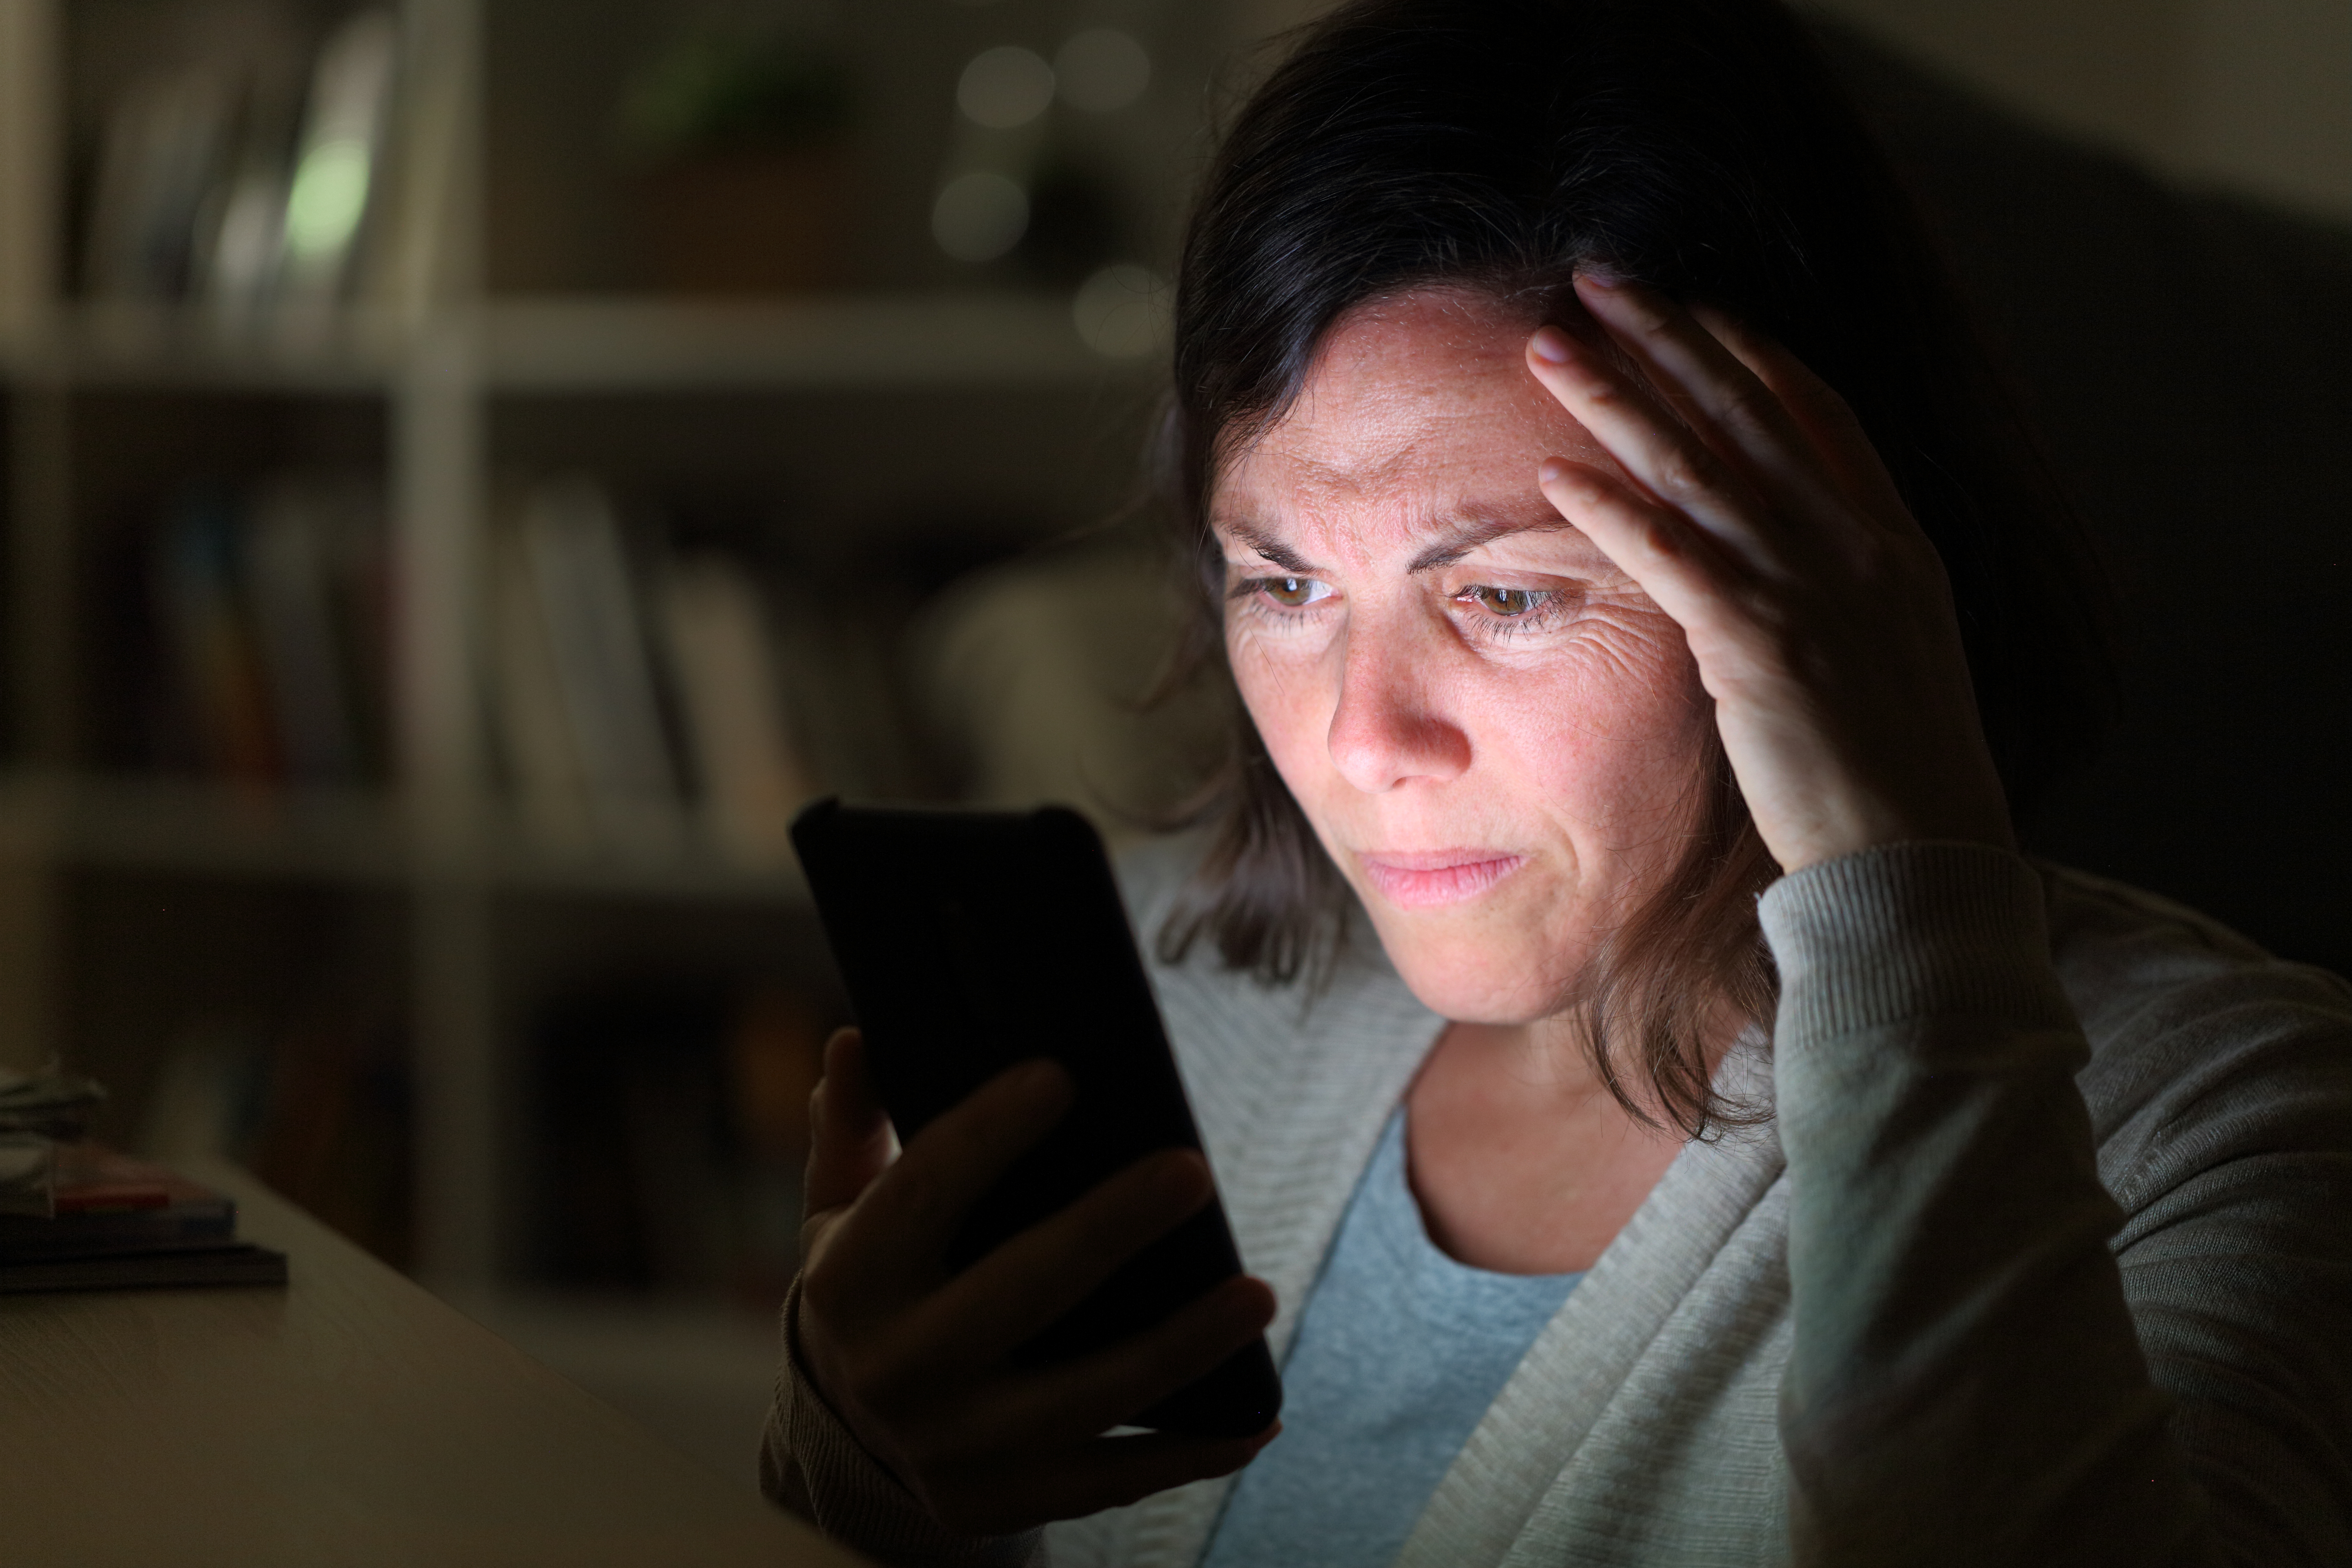 Une femme inquiète regarde son téléphone portable | Source : Shutterstock